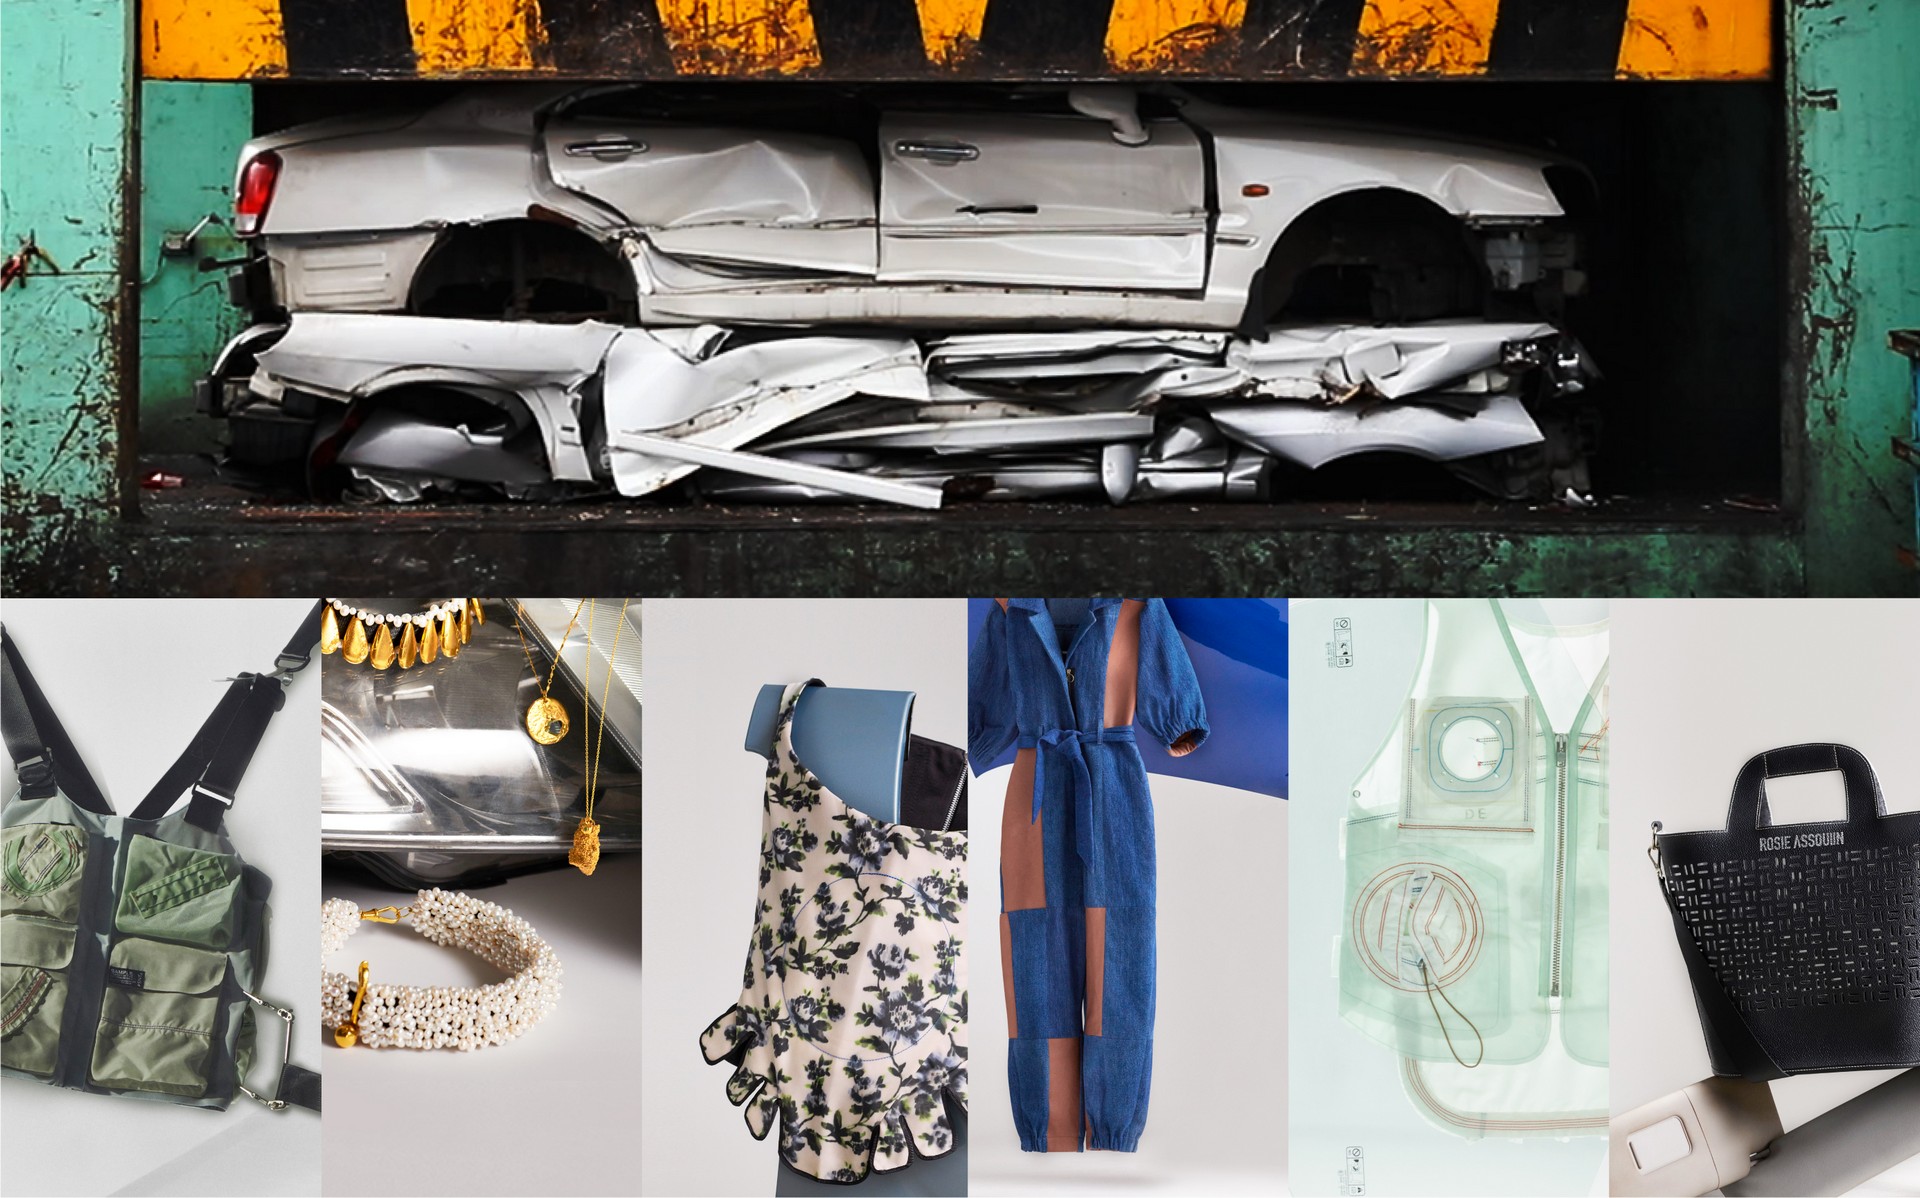 هيونداي تصنع ملابس وحُلي من خردة السيارات